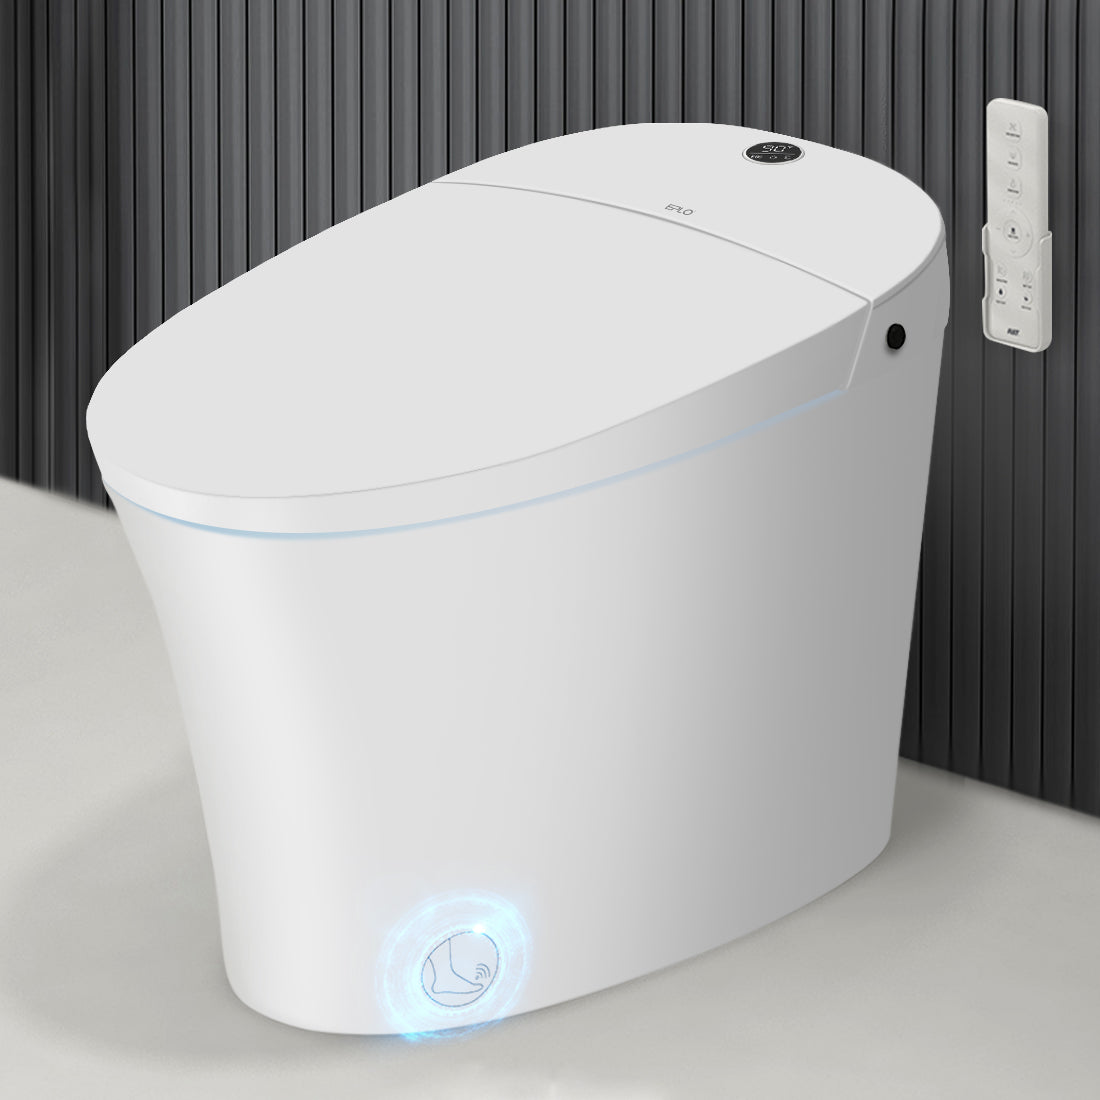 Eplo Smart Toilet E16